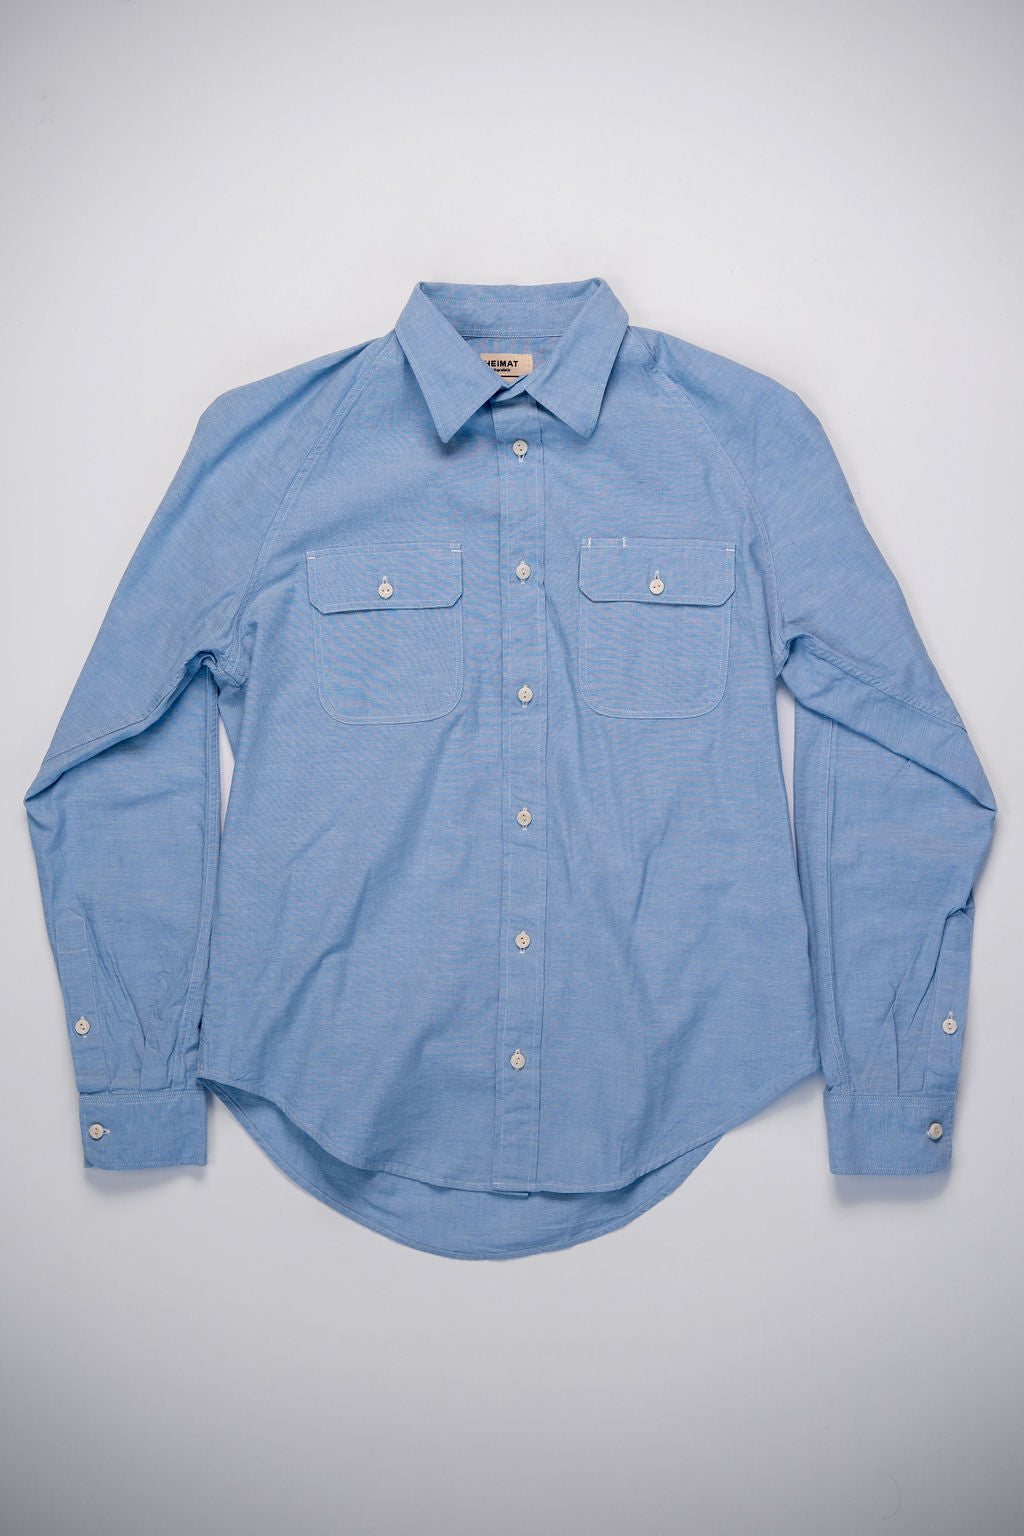 Heimat Textil Work Shirt - Trail Blue Chambray